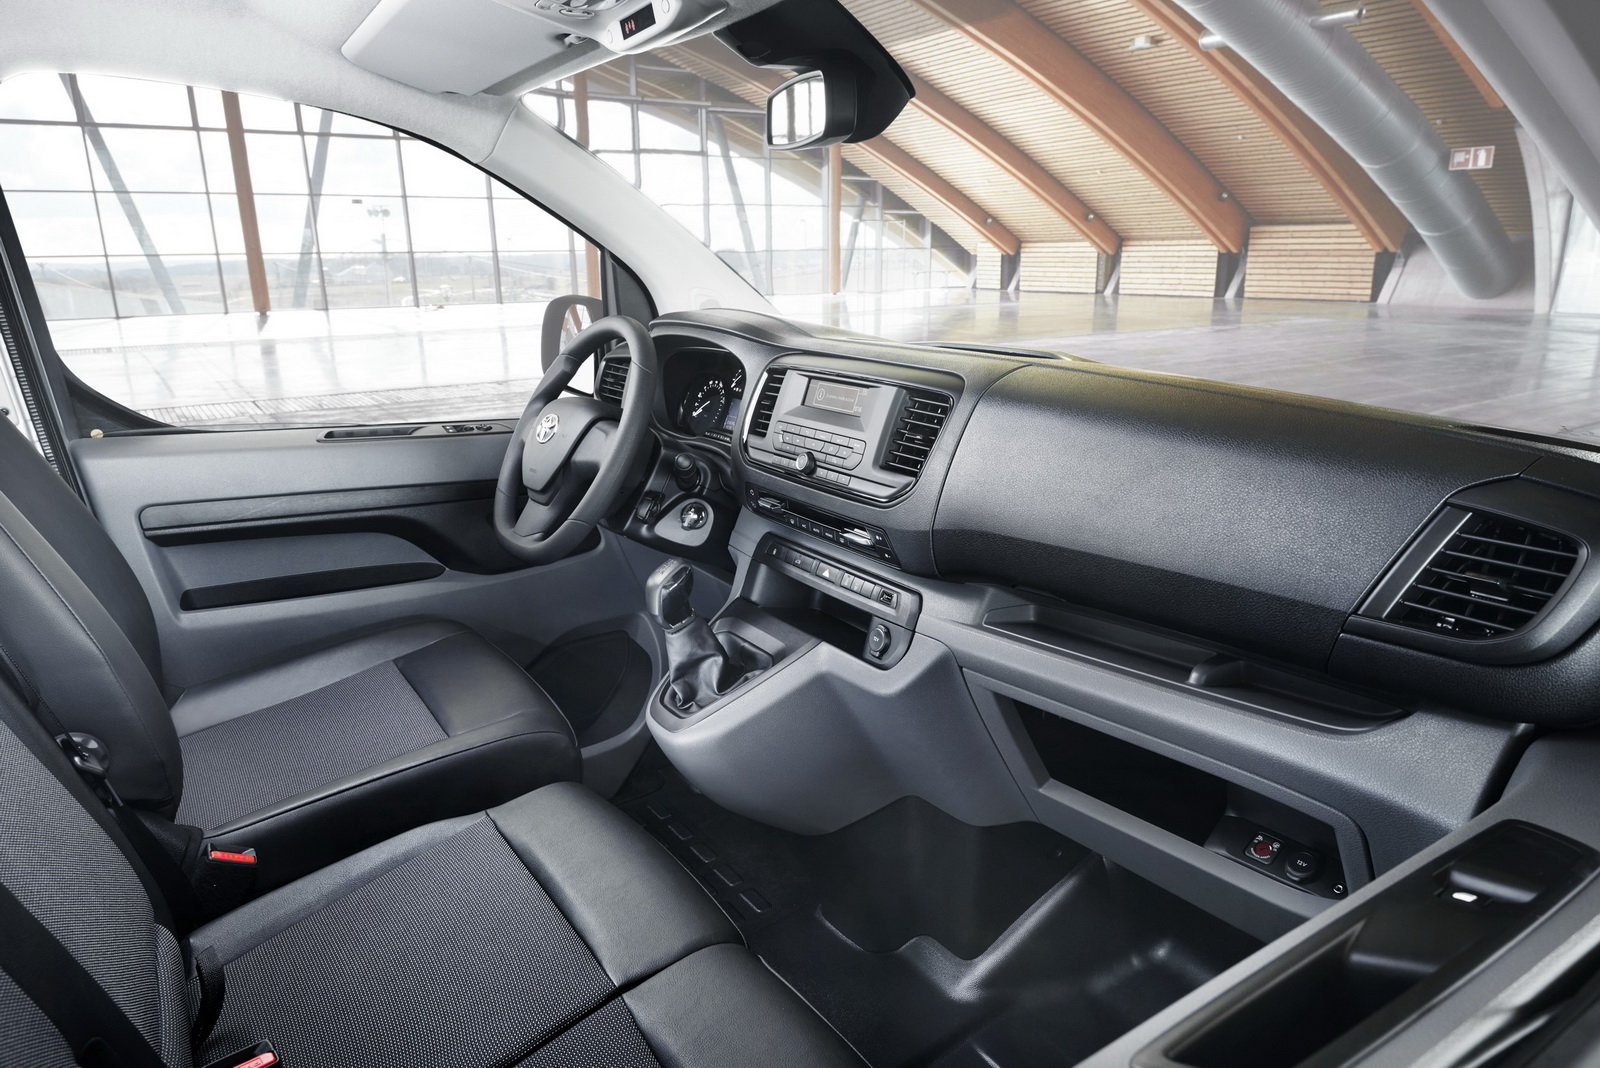 Kabina Toyoty ProAce je přehledná a plná odkládacích prostor.